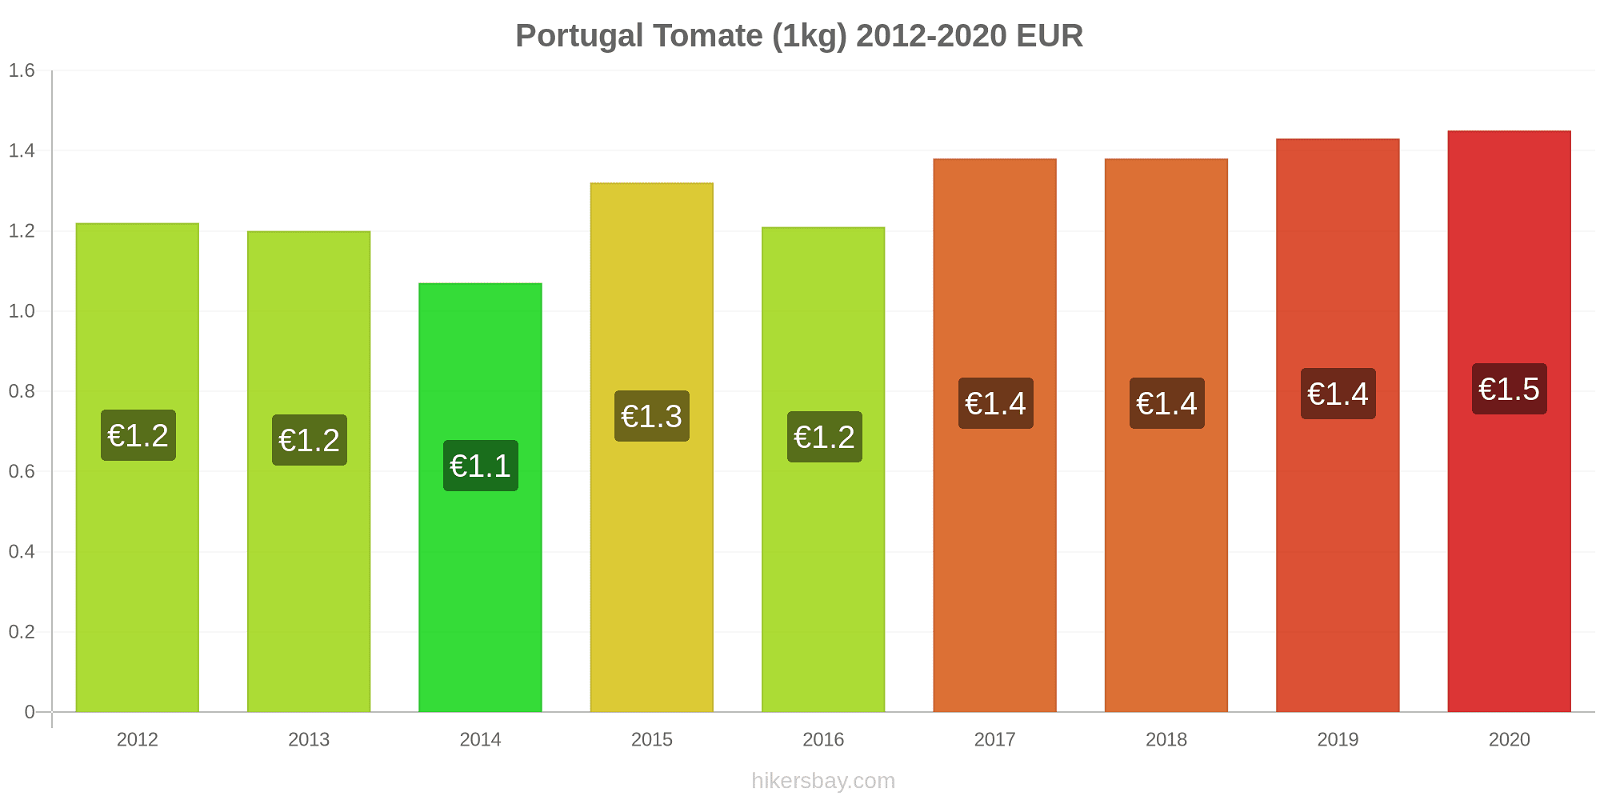 Portugal cambios de precios Tomate (1kg) hikersbay.com